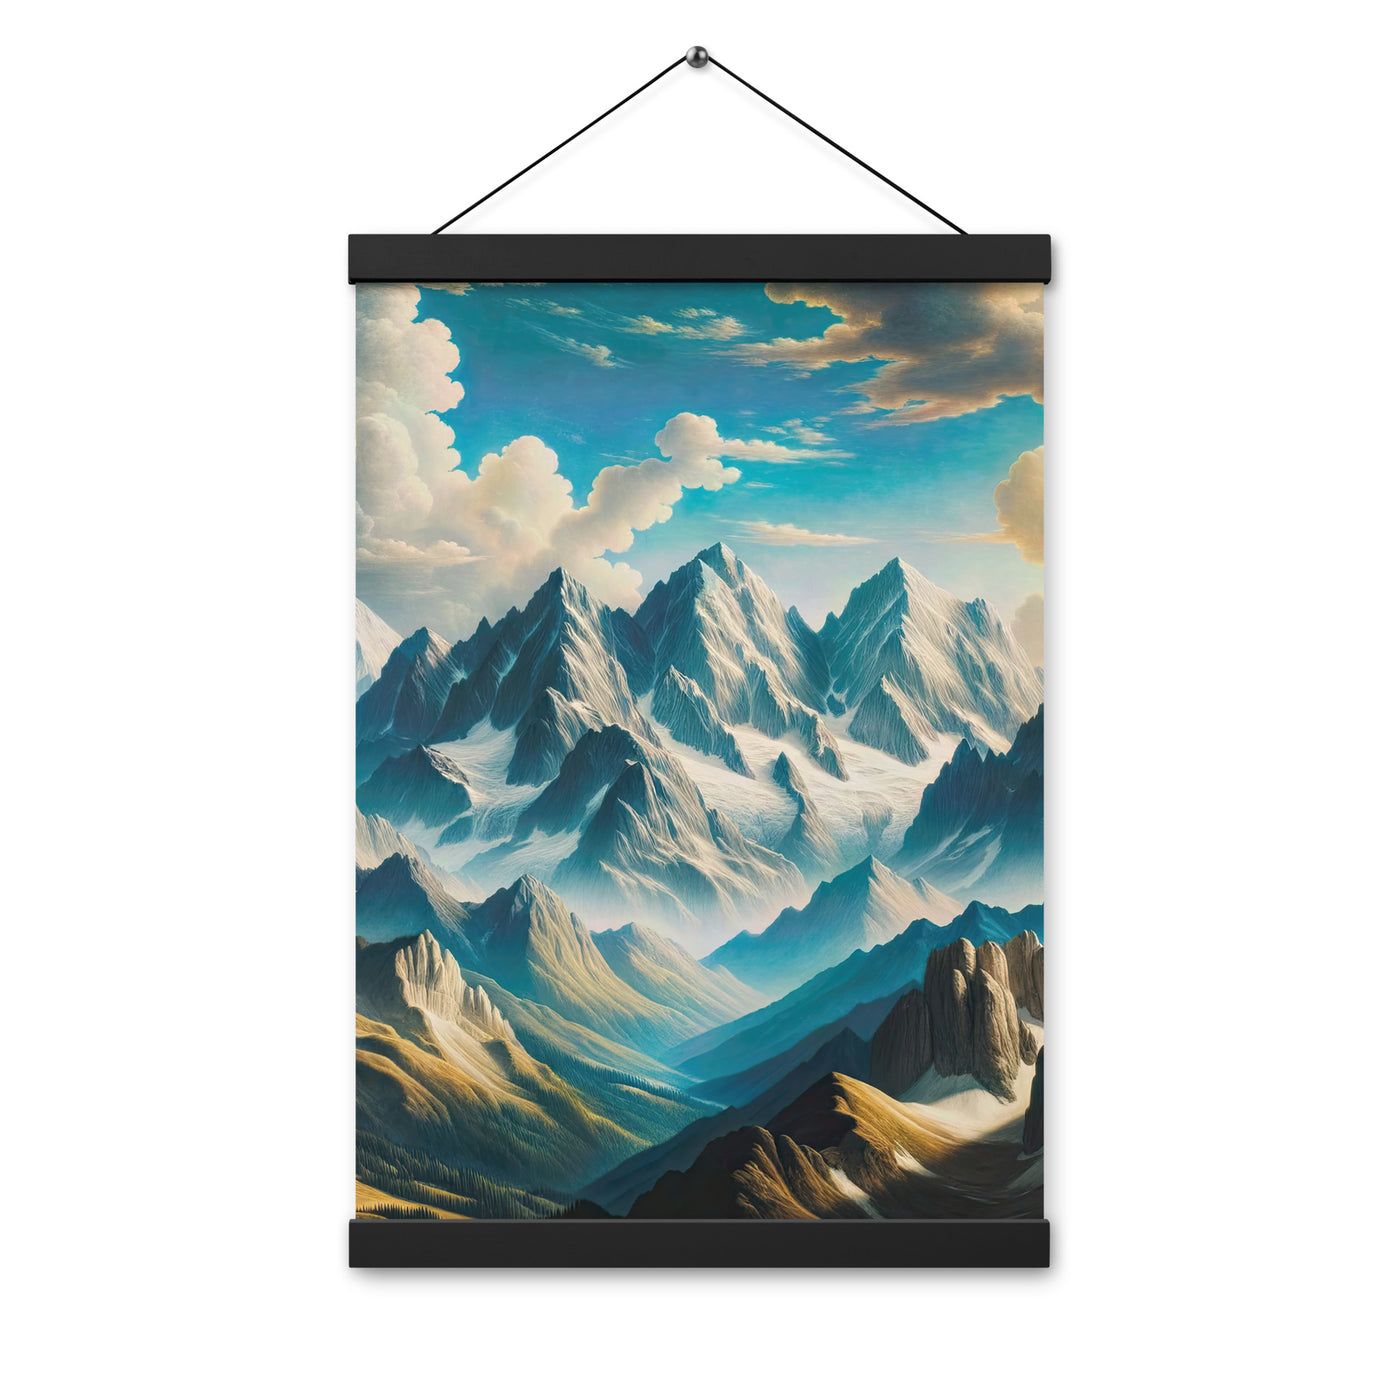 Ein Gemälde von Bergen, das eine epische Atmosphäre ausstrahlt. Kunst der Frührenaissance - Premium Poster mit Aufhängung berge xxx yyy zzz 30.5 x 45.7 cm